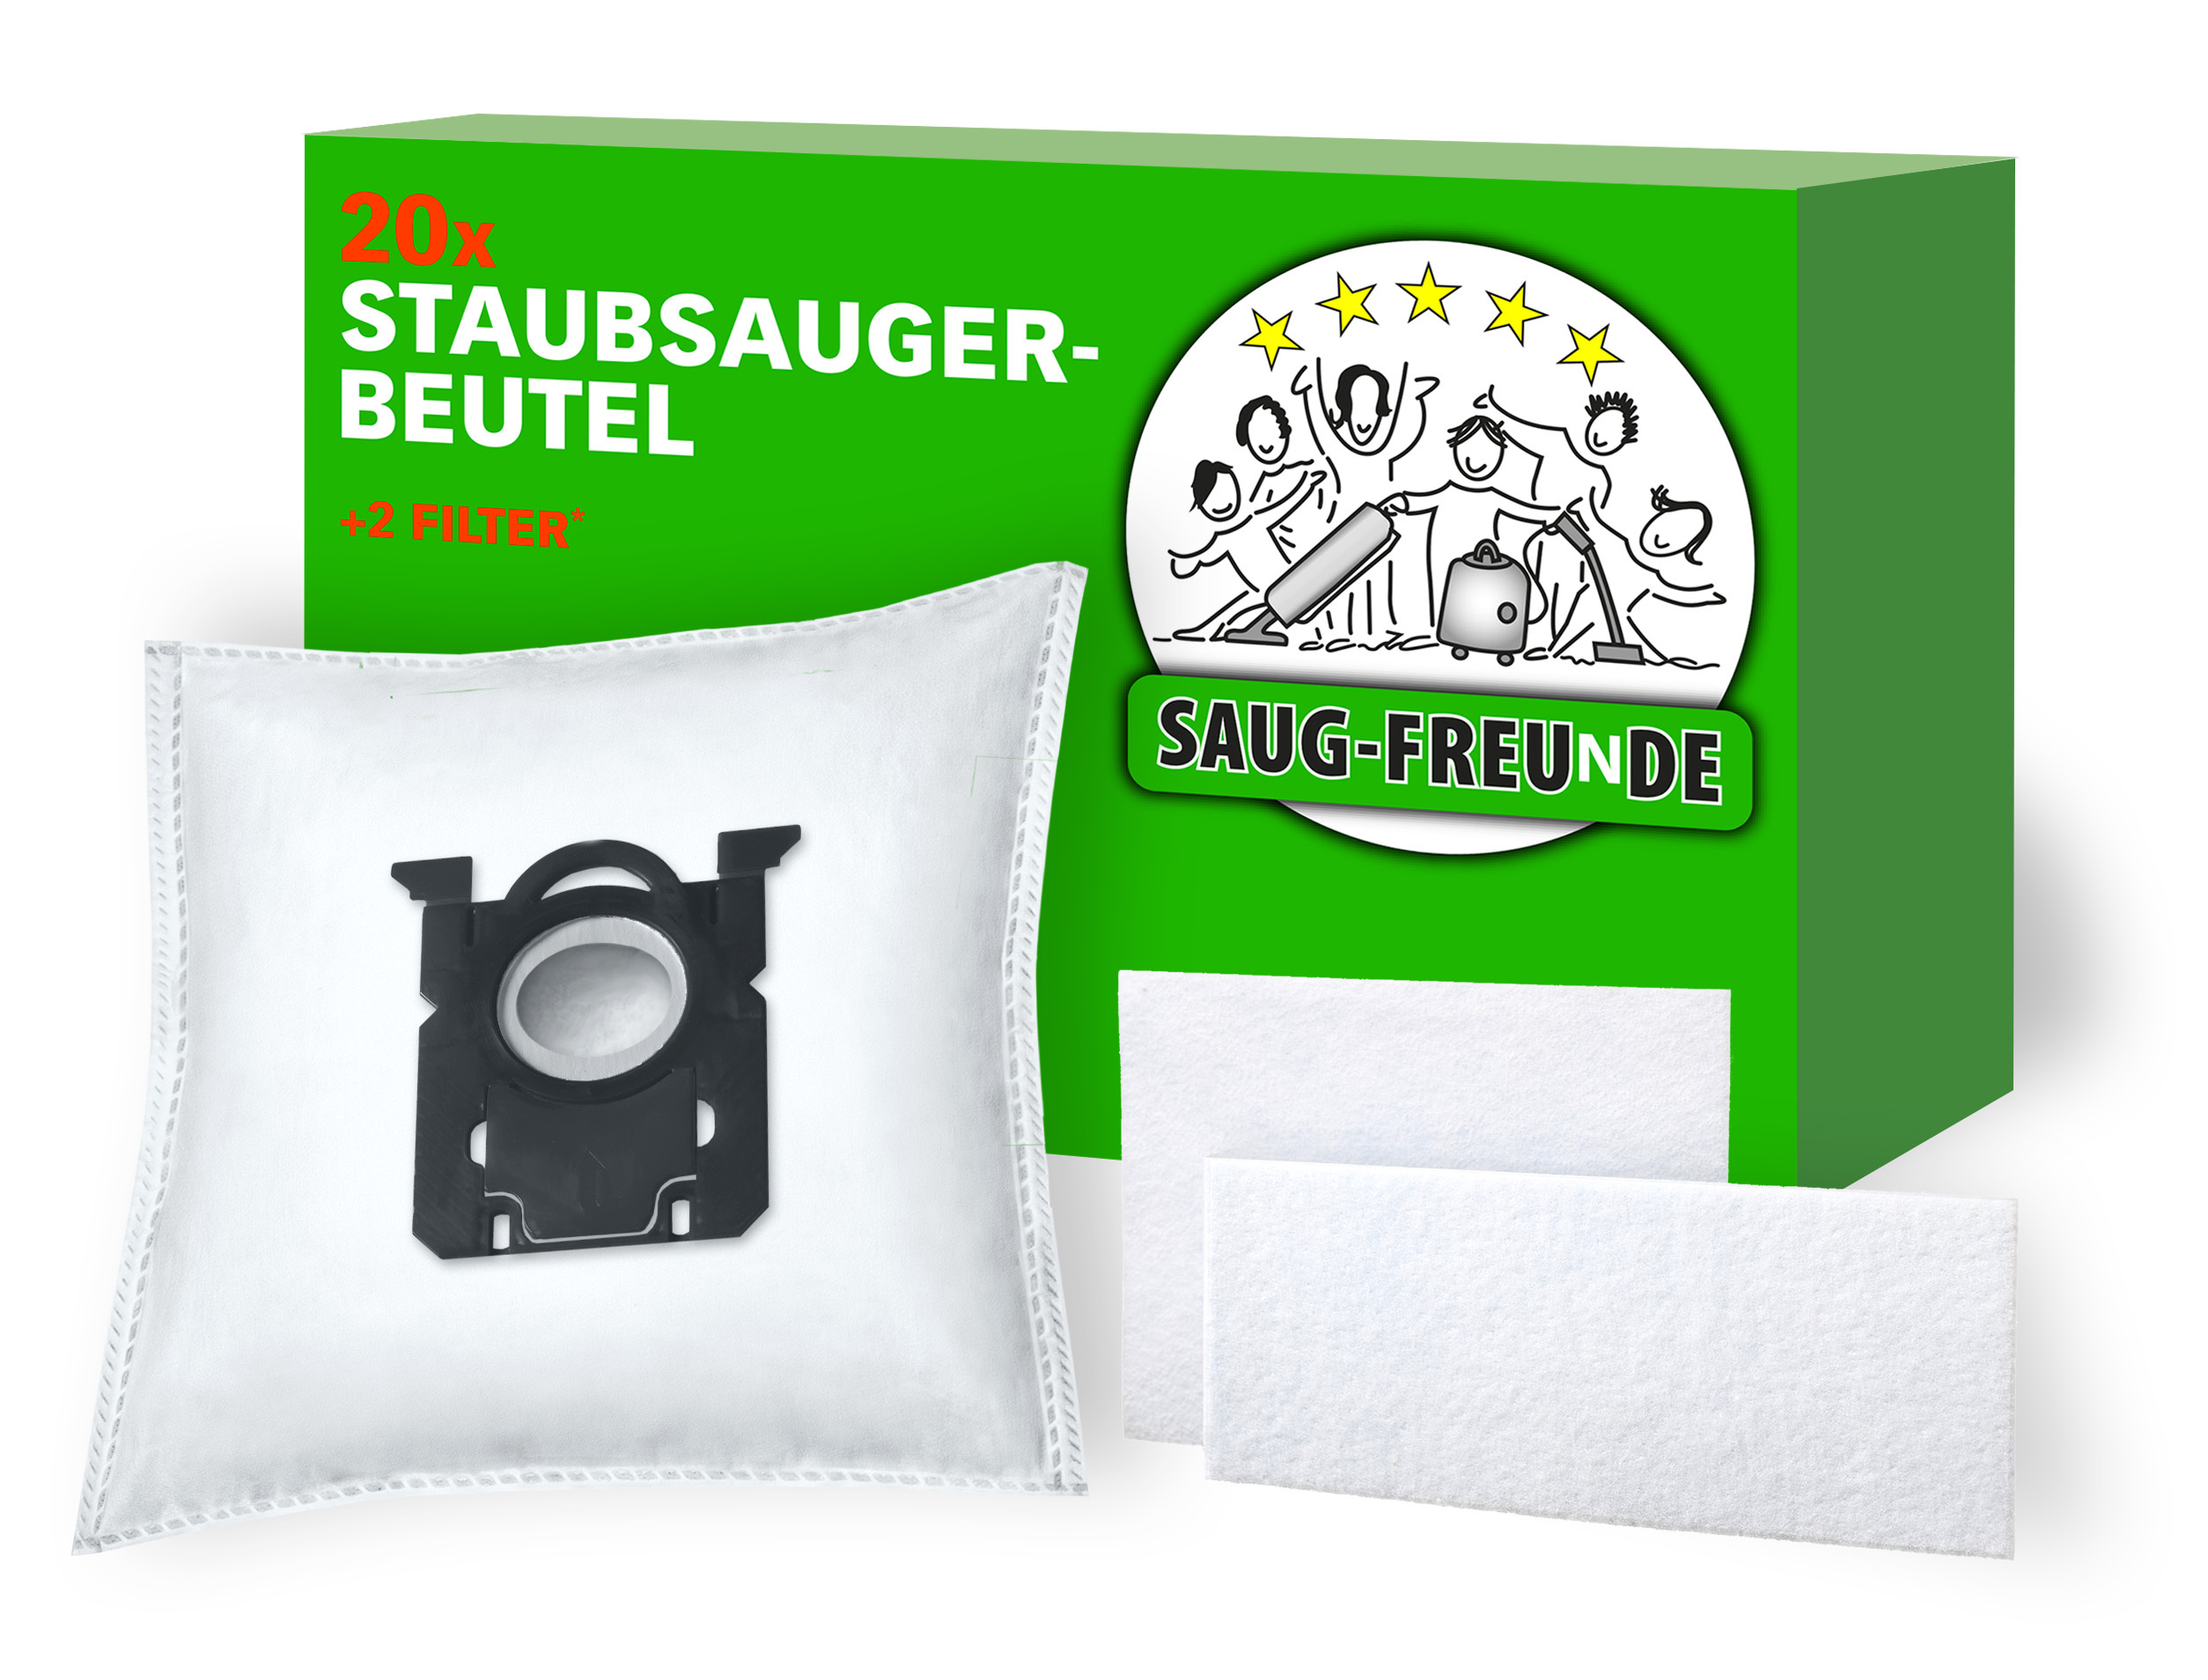 Staubsauger-Beutel 10x SAUG-FREUNDE